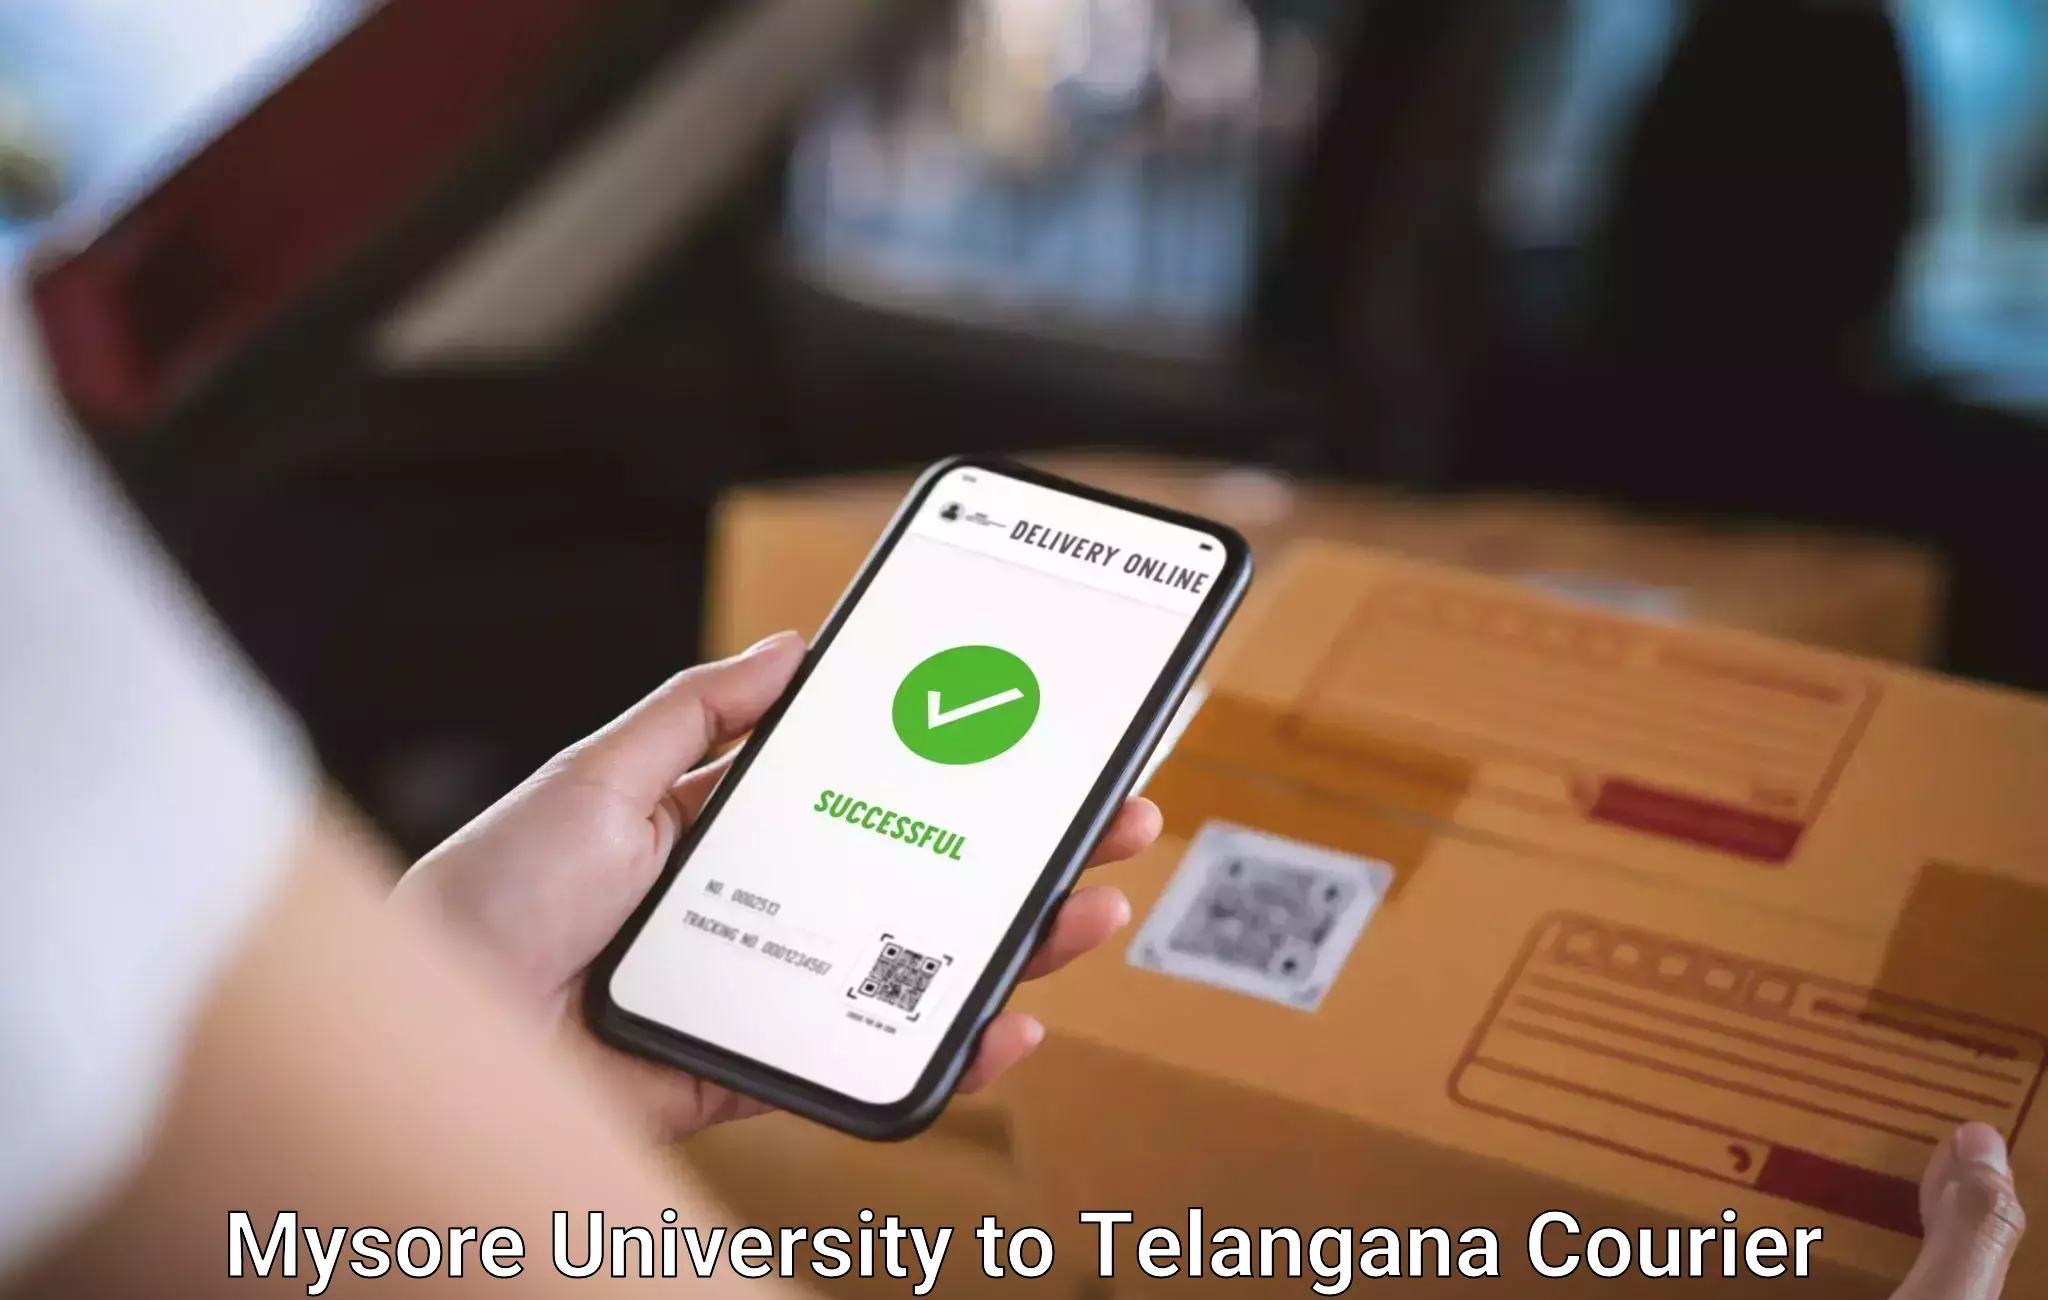 Electronic items luggage shipping Mysore University to Telangana